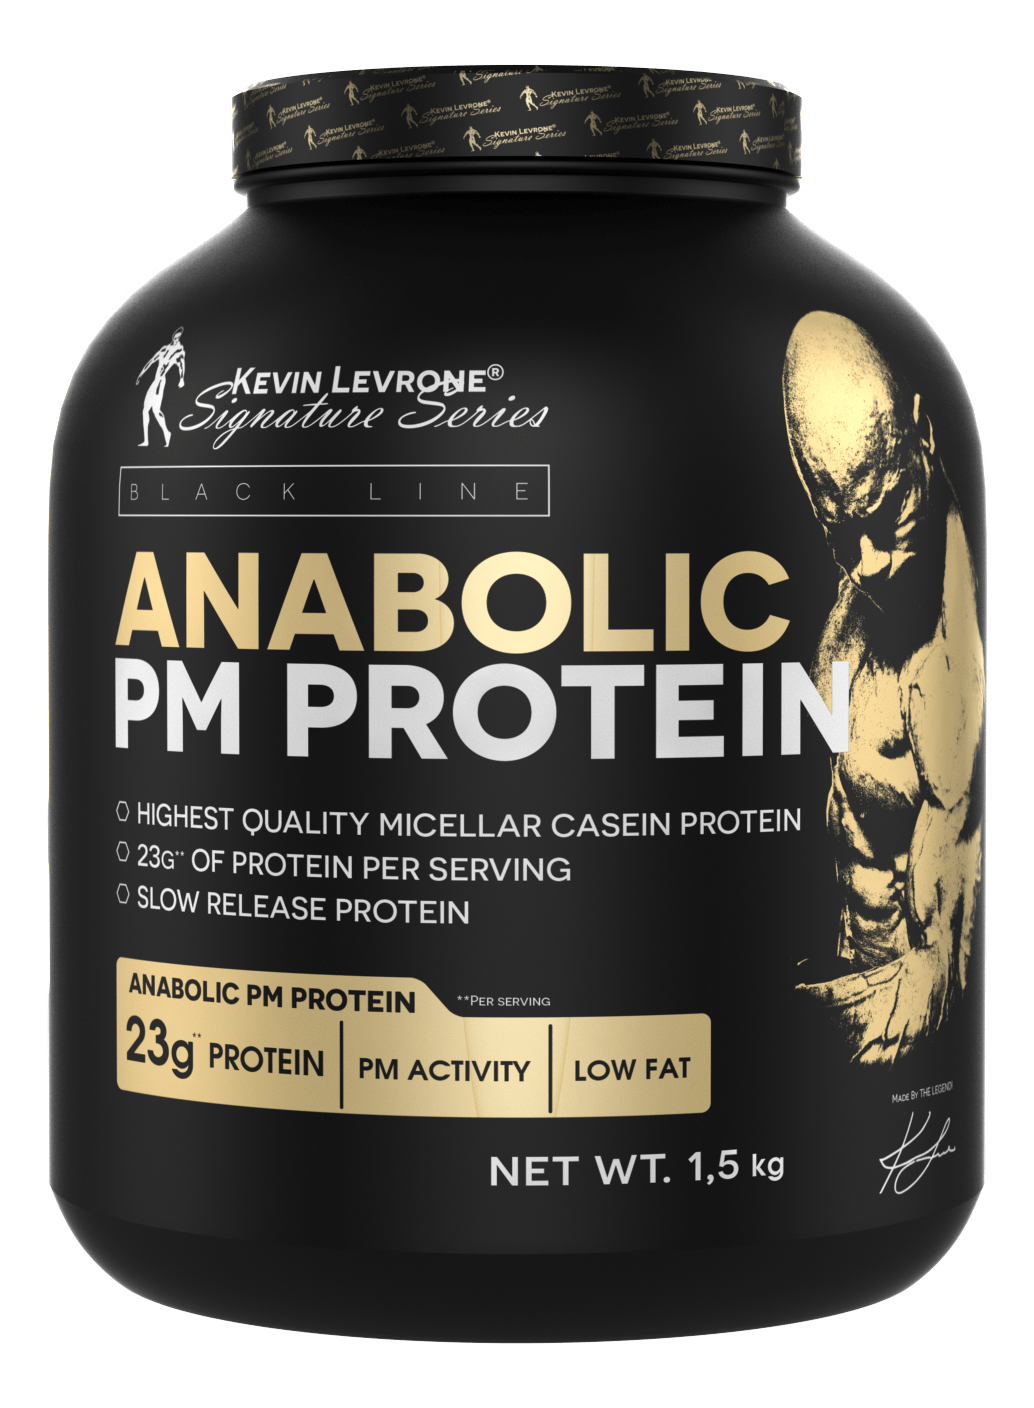 Anabolic PM Protein, 908 г, Kevin Levrone. Сывороточный протеин. Восстановление Антикатаболические свойства Сухая мышечная масса 